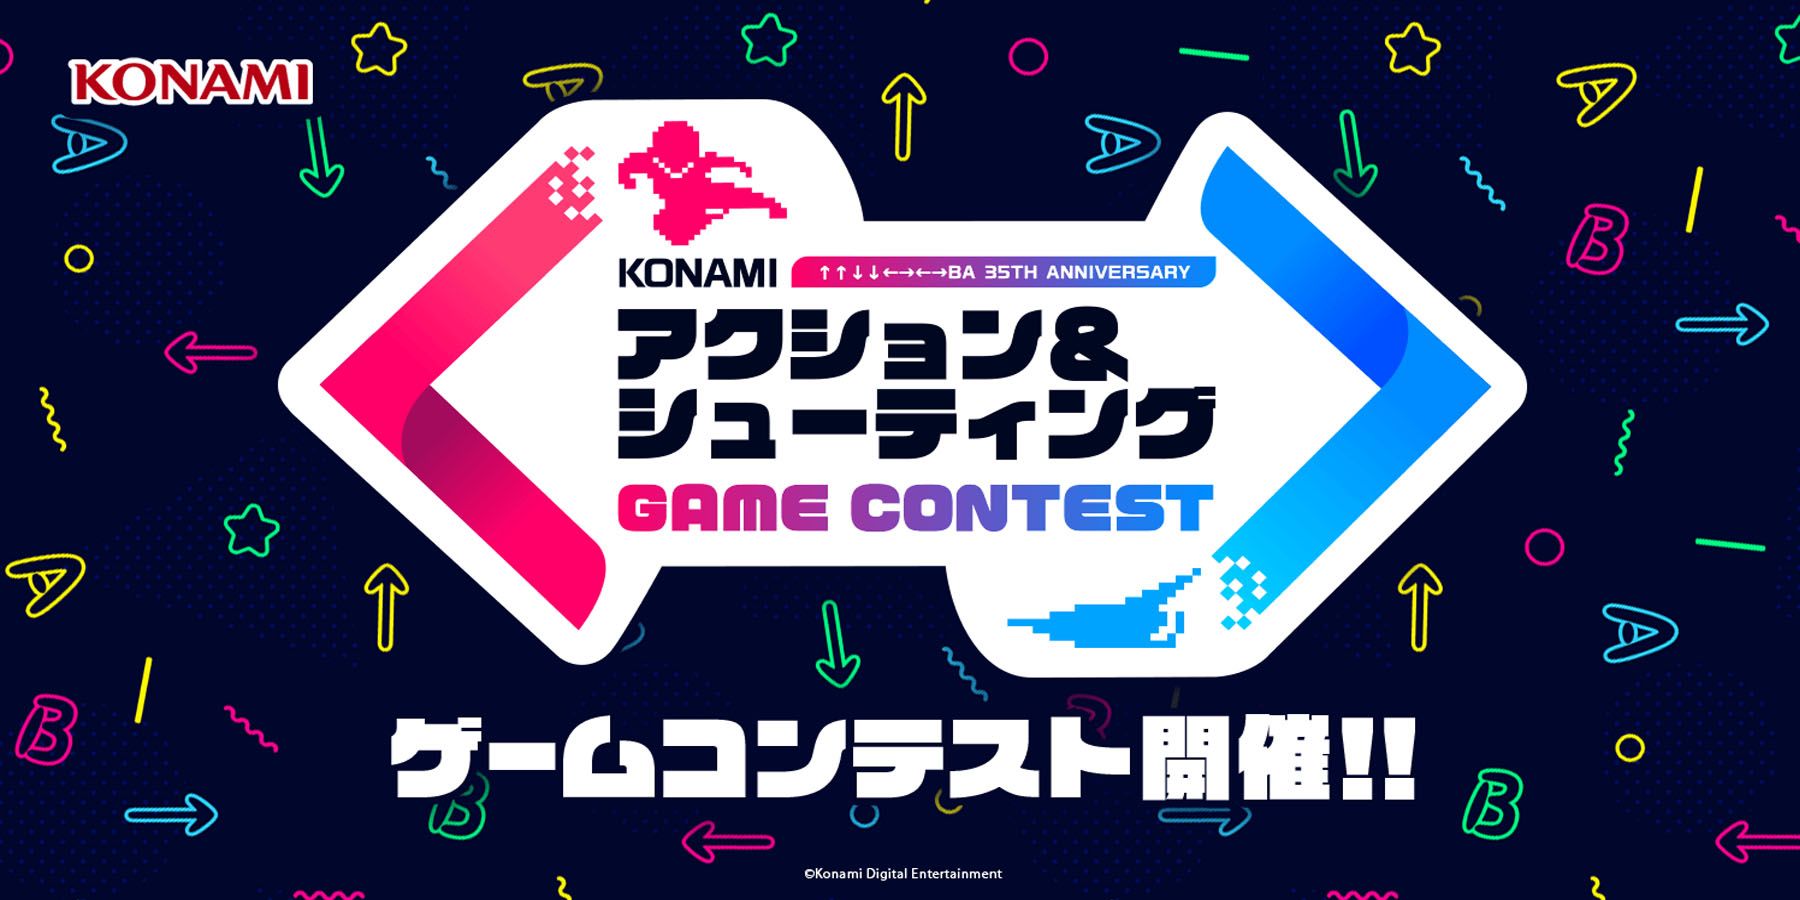 Konami იწვევს ინდი დეველოპერებს კლასიკური ფრანშიზების საფუძველზე თამაშების შესაქმნელად